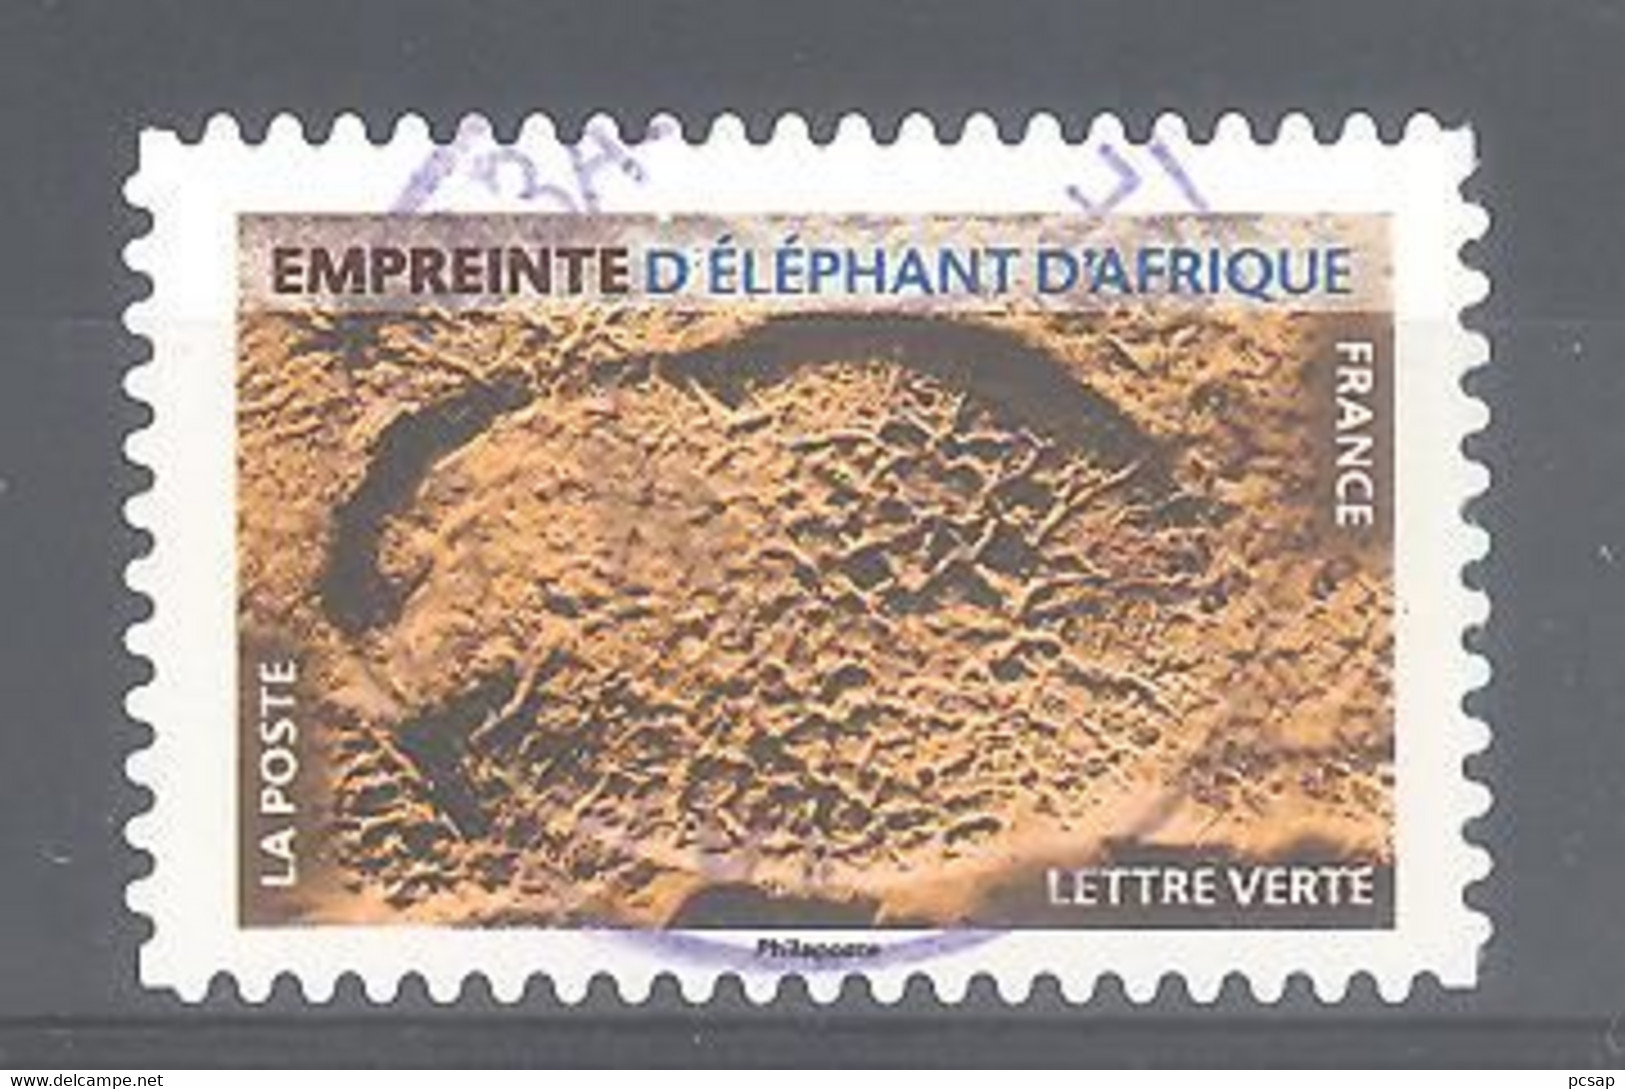 France Autoadhésif Oblitéré N°1964 (Empreinte D'éléphant D'Afrique) (cachet Rond) - Usati